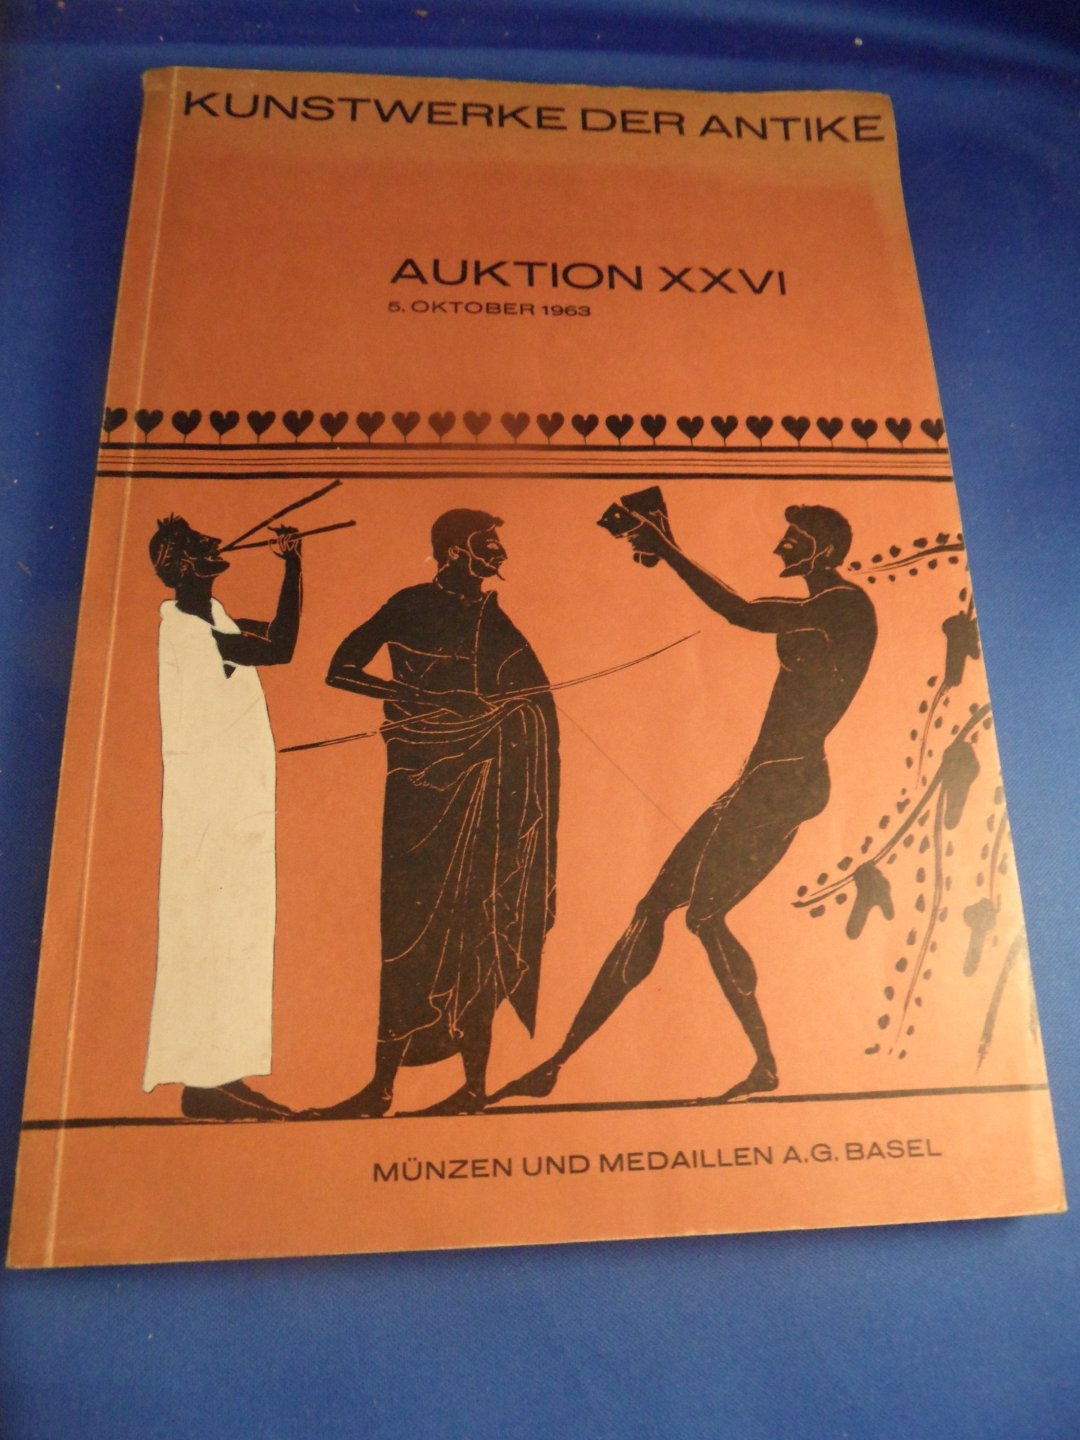  - Kunstwerke der Antike auktion XXVI. Bronzen, Keramik, Skulpturen